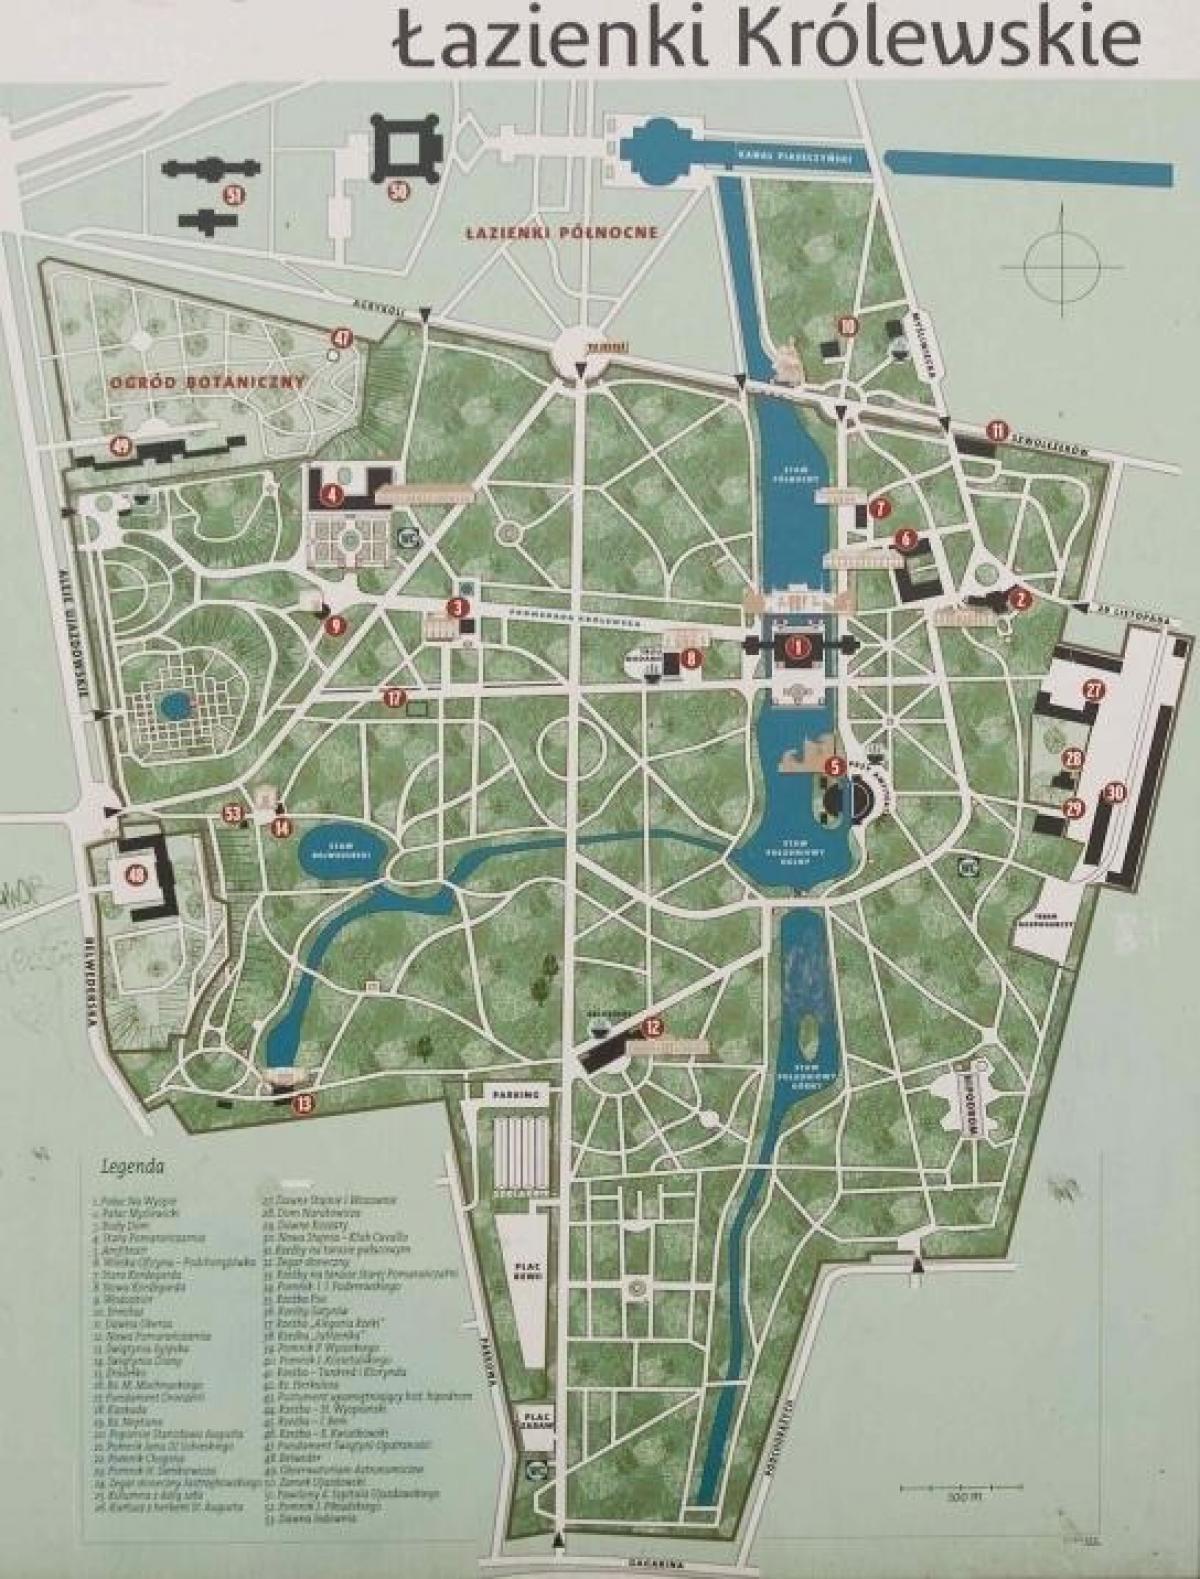 công viên lazienki Warsaw bản đồ